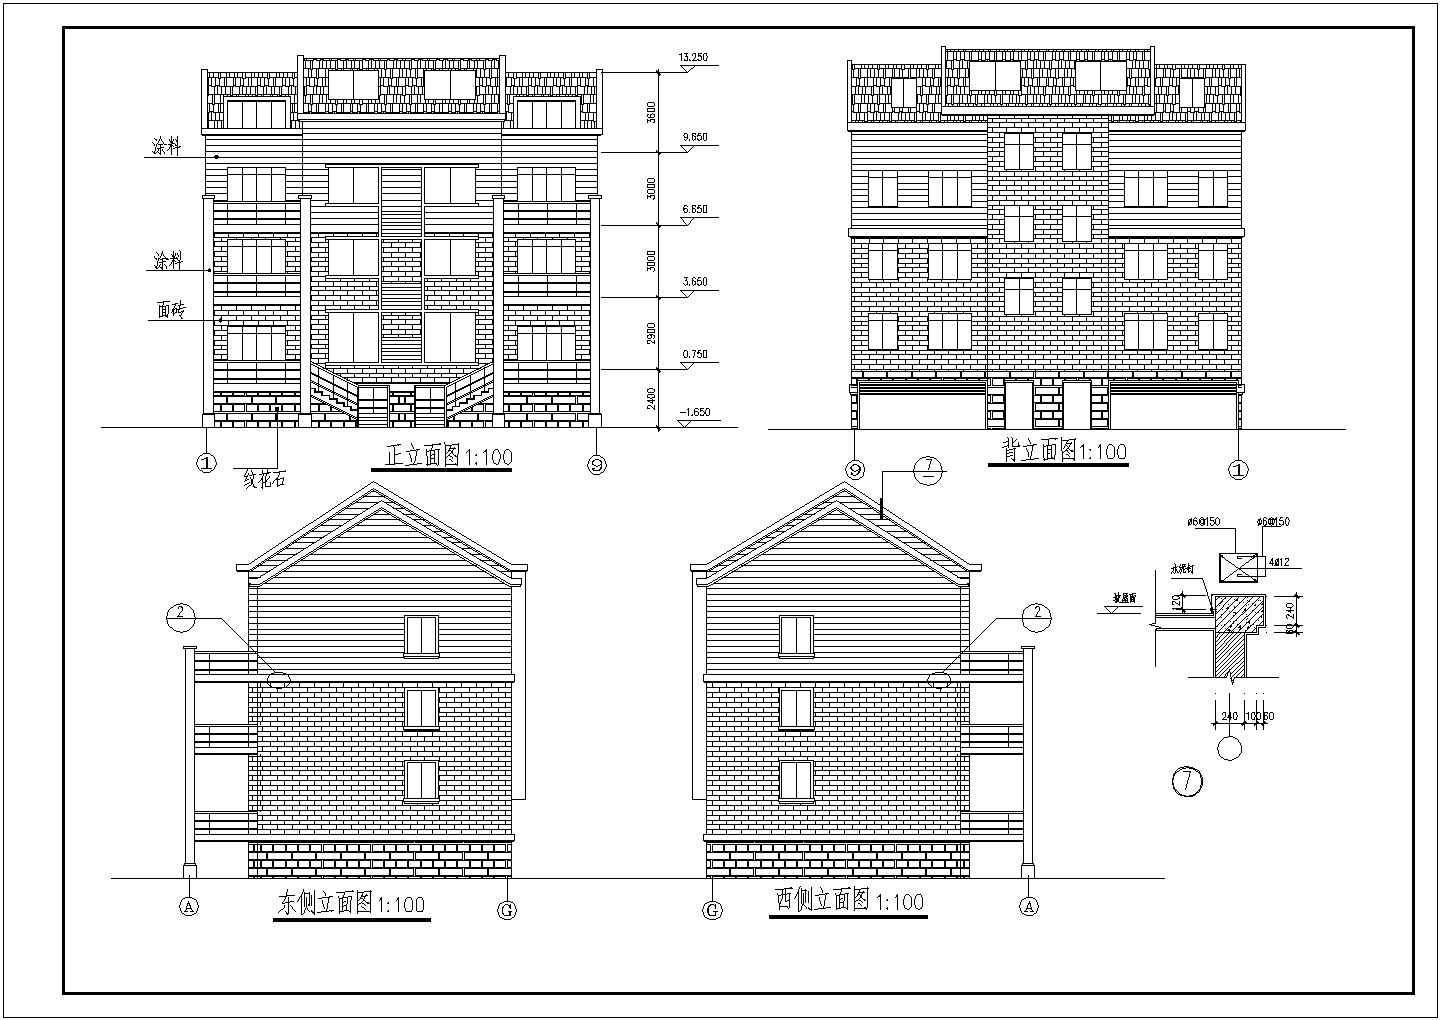 【无锡】某精品小区多层住宅楼全套建筑方案图纸(含跃层平面图)